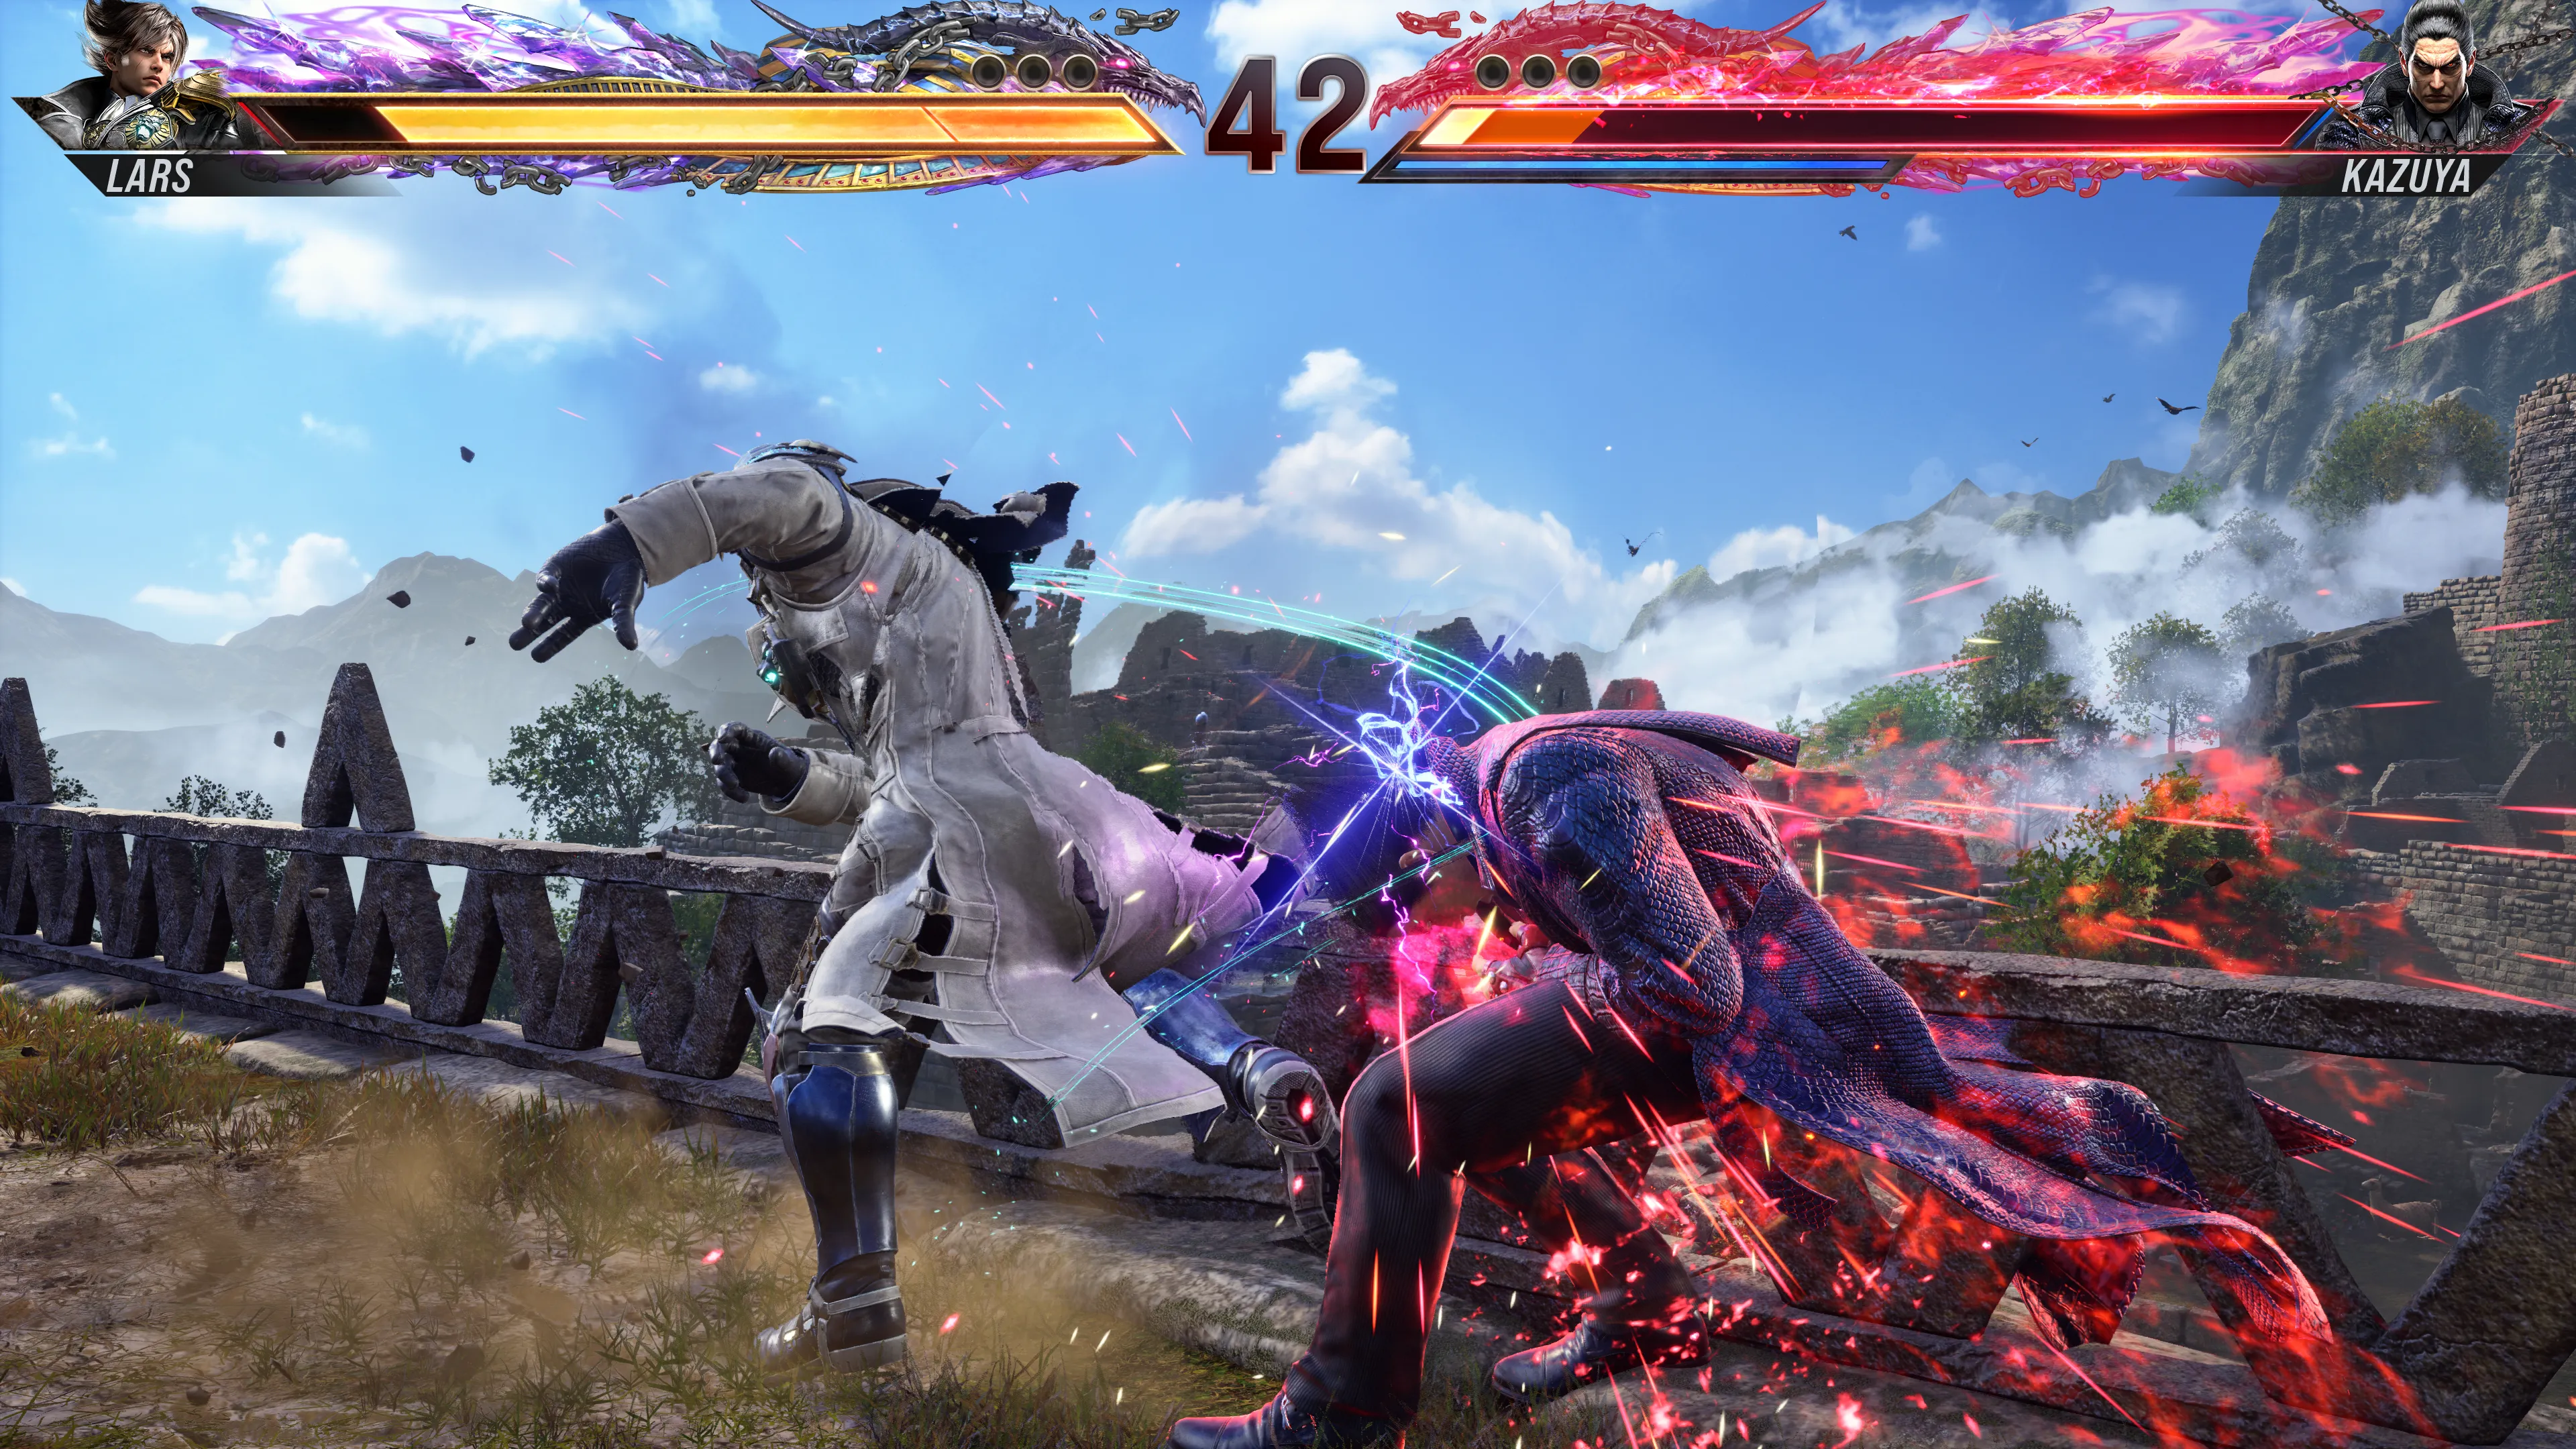 Lars aterrizando un ataque en Kazuya desde su postura de Dynamic Entry en Tekken 8